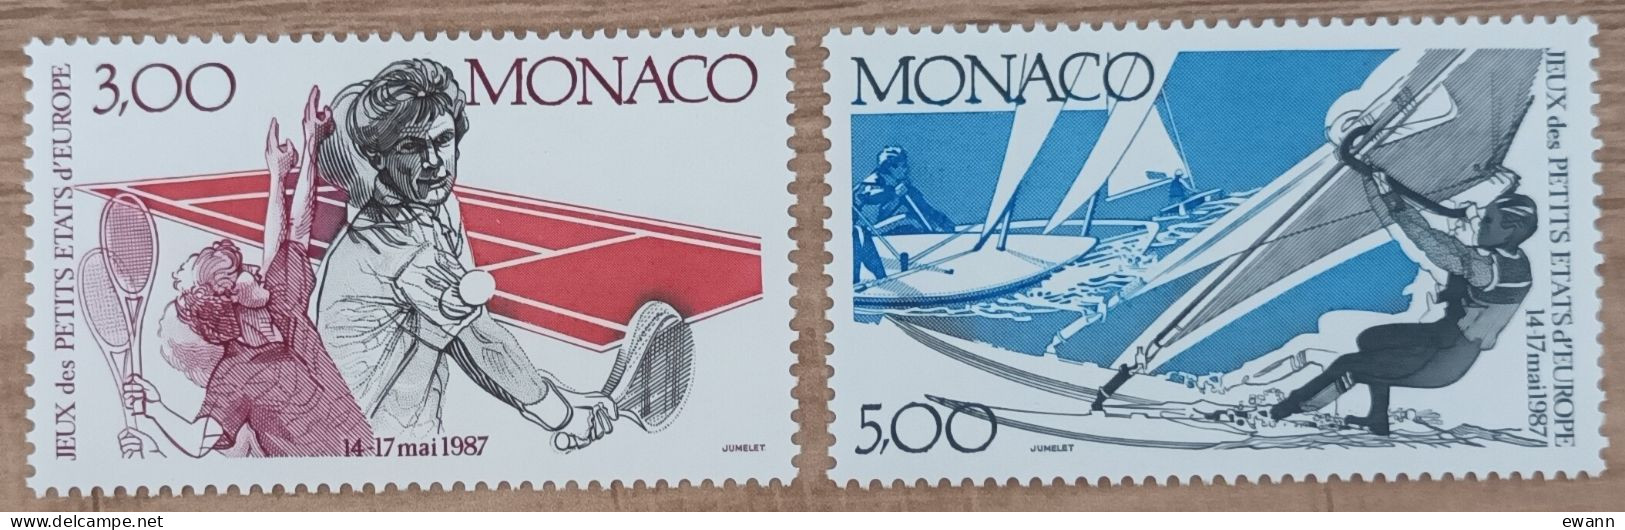 Monaco - YT N°1579, 1580 - 2es Jeux Des Petits Etats D'Europe - 1987 - Neuf - Ungebraucht